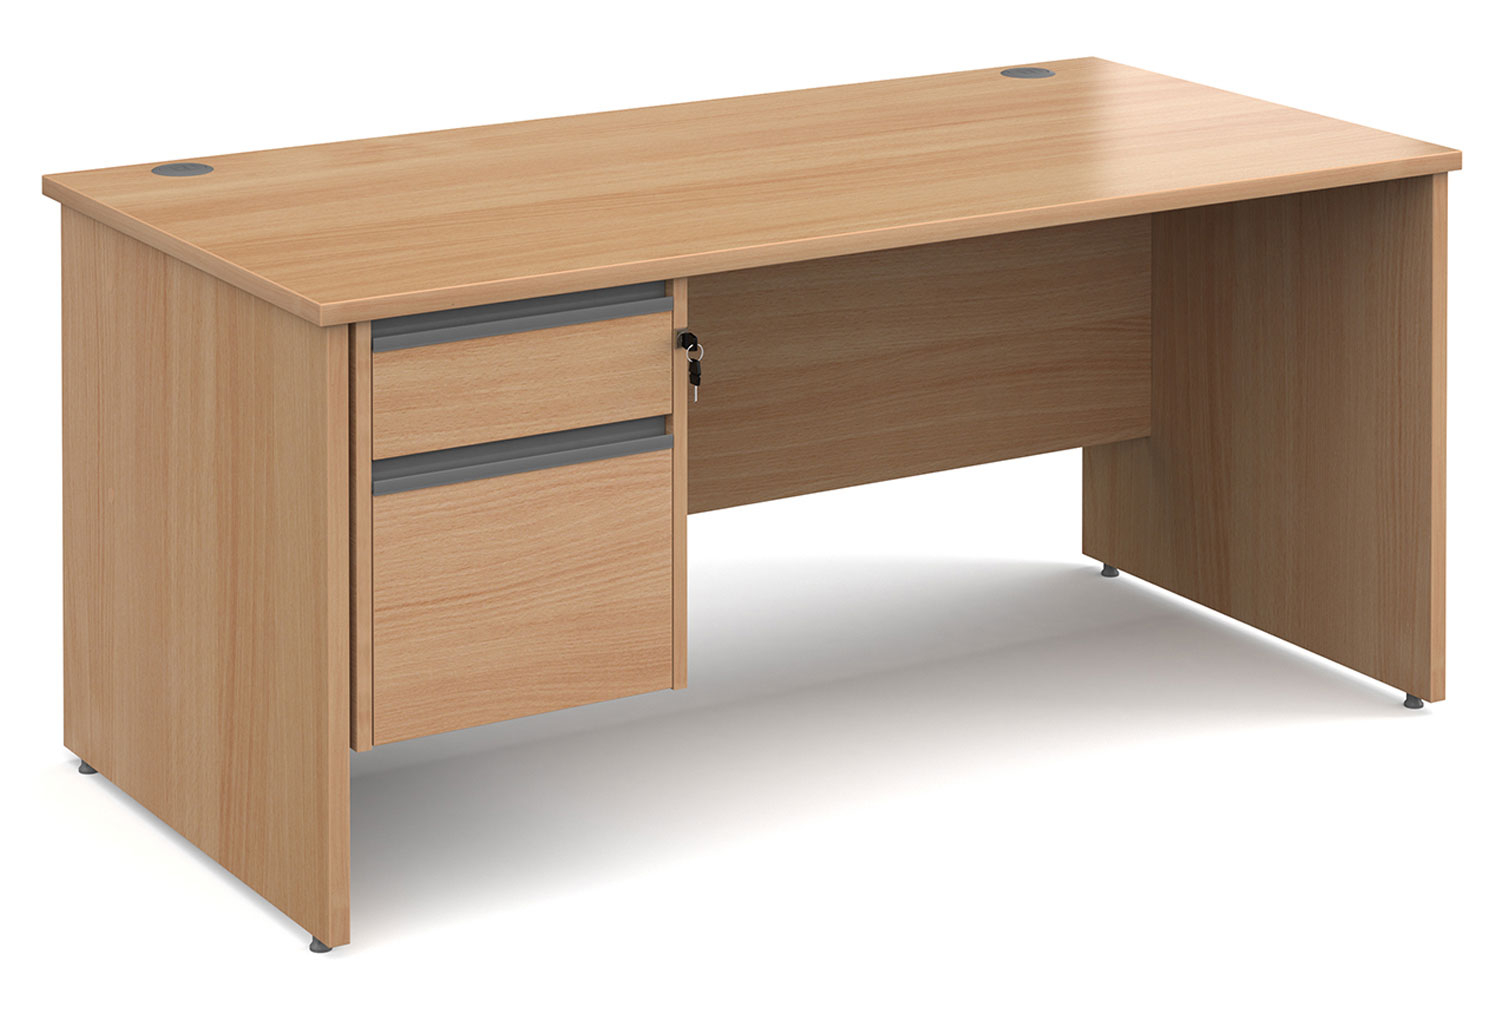 Value Line Classic+ Panel End Office Desk 2 Drawers (Graphite Slats), 160wx80dx73h (cm), Beech